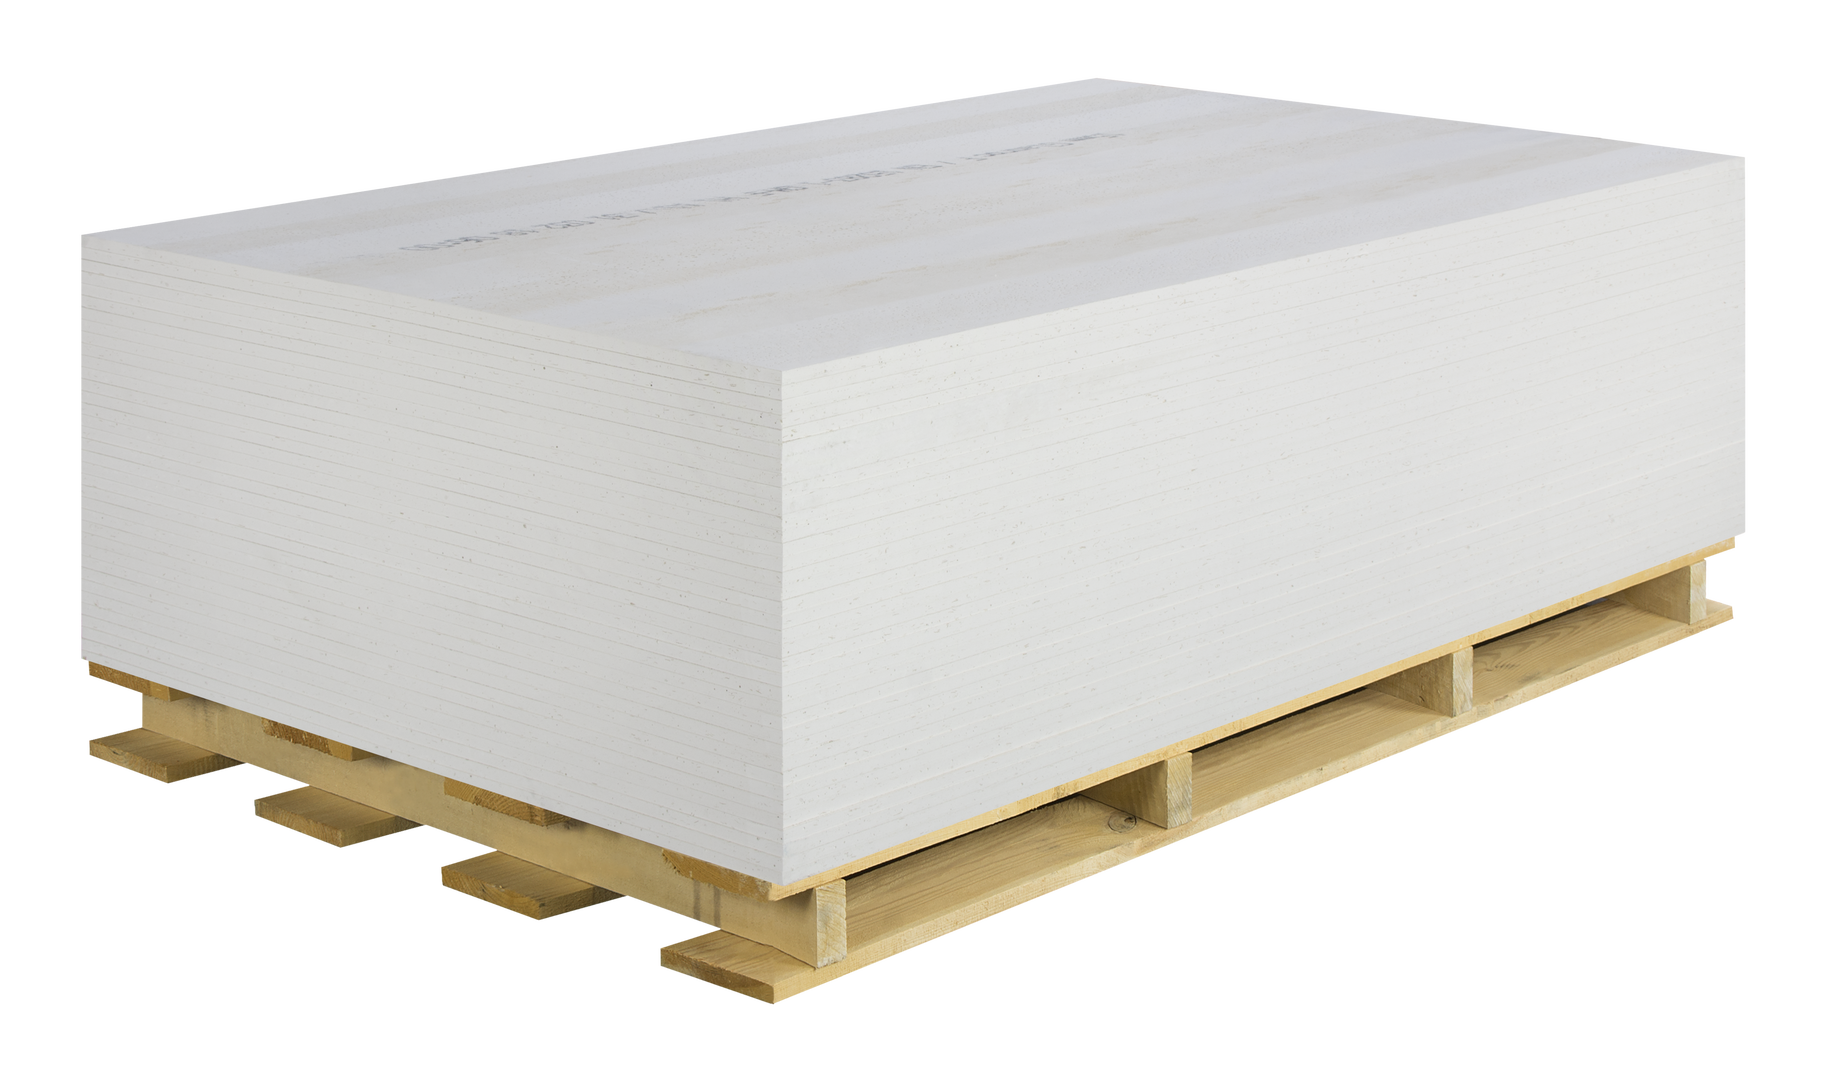 Special gypsum boards - Rigid Plate Glasroc F Wrinkle 20 x 1200 x 2000 mm, maxbau.ro